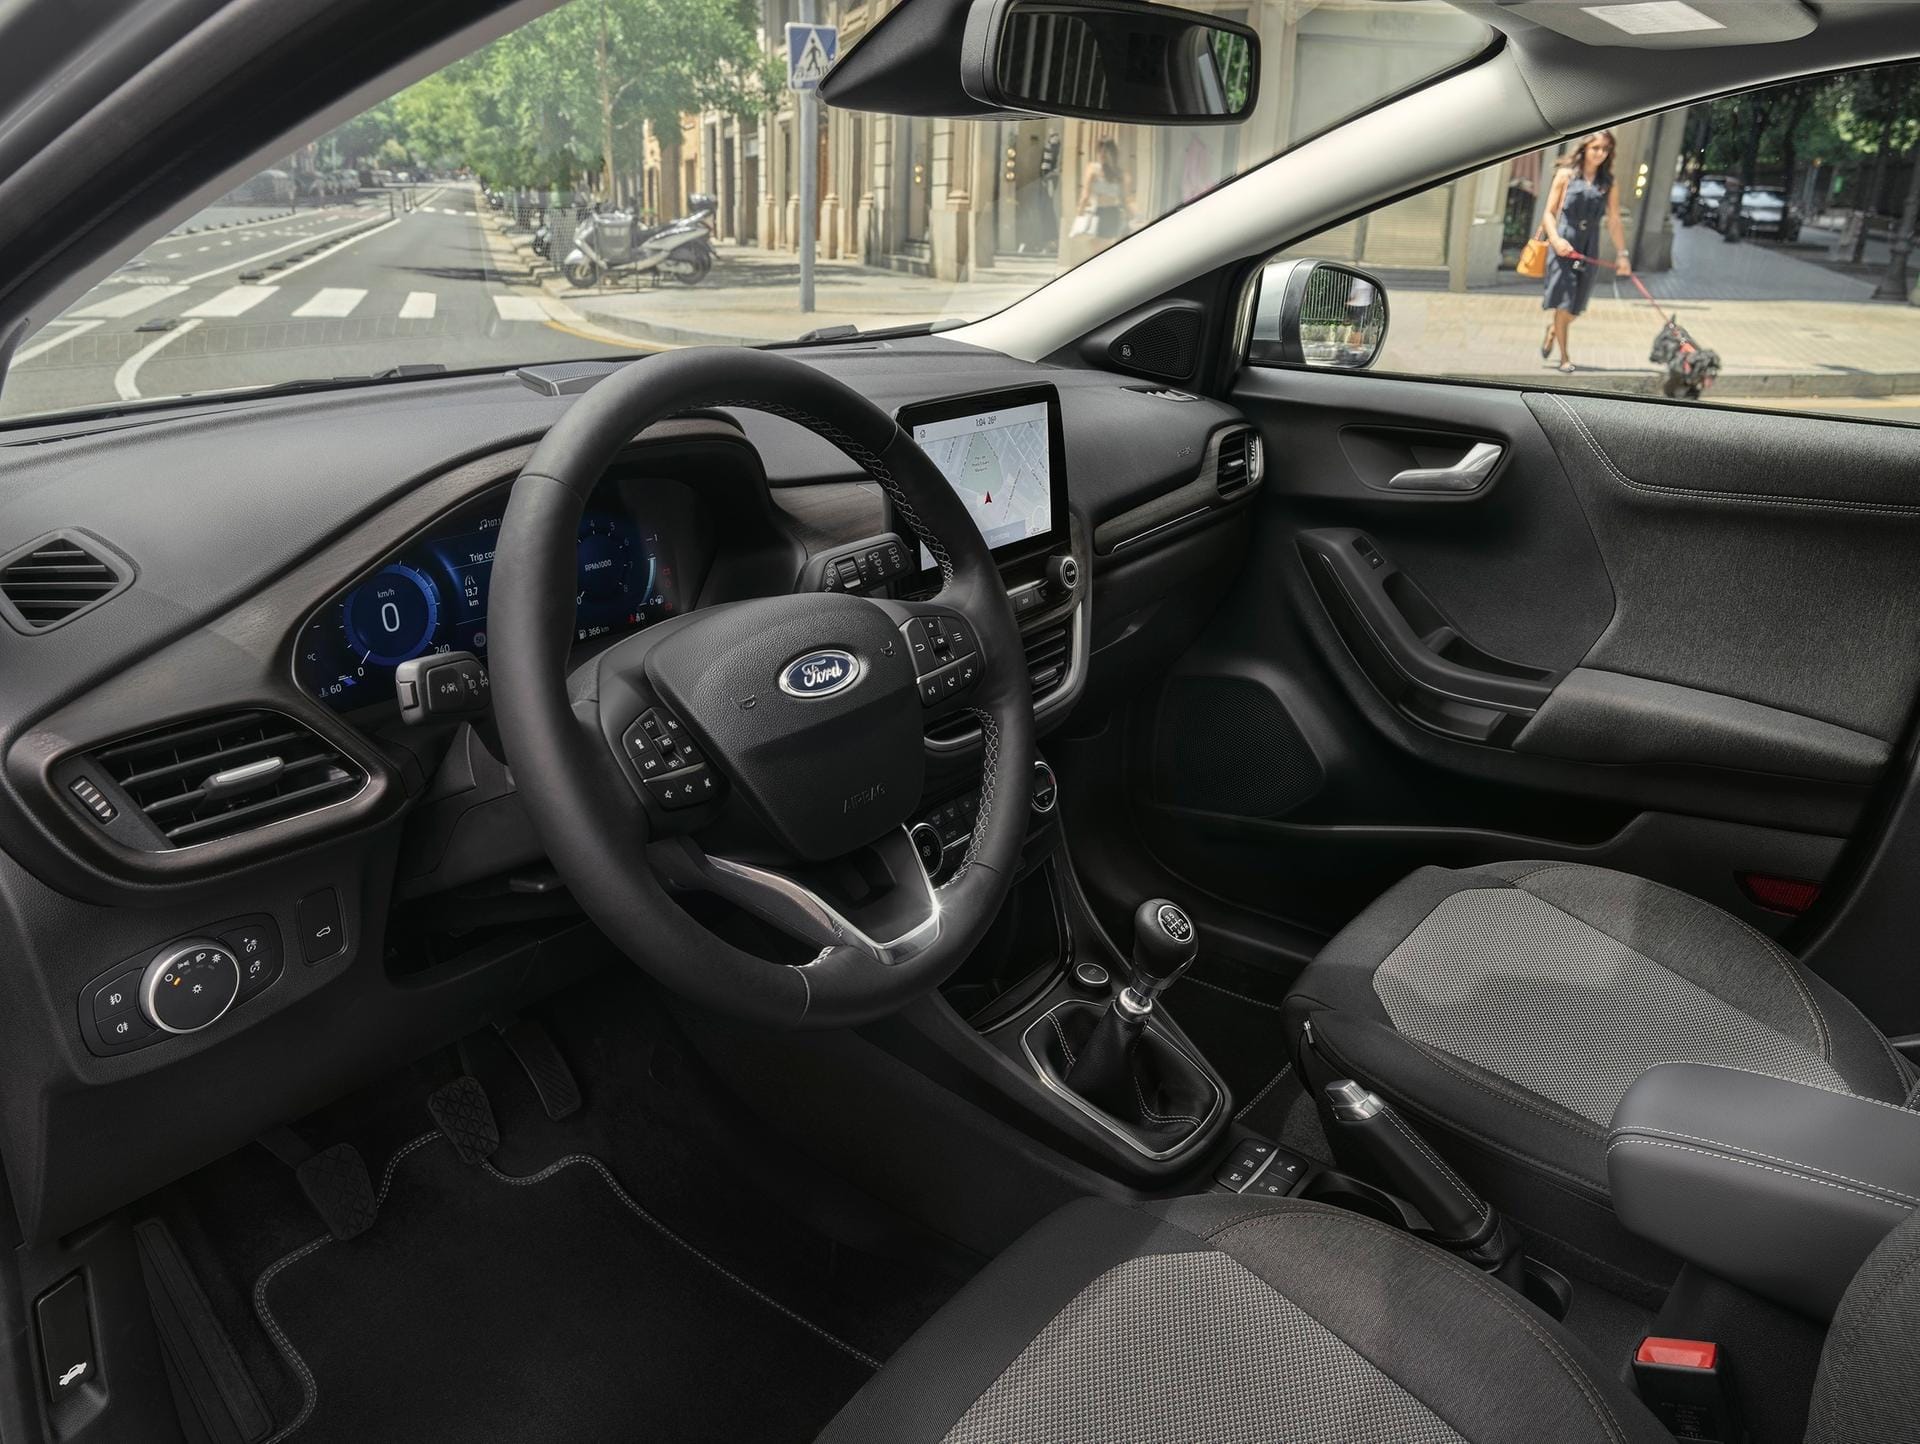 Ford Puma: Voll digitale Instrumententafel und WLAN-Hotspot für bis zu zehn Geräte: Der neue Puma setzt auf Zeitgeist und Motoren mit bis zu 155 PS.